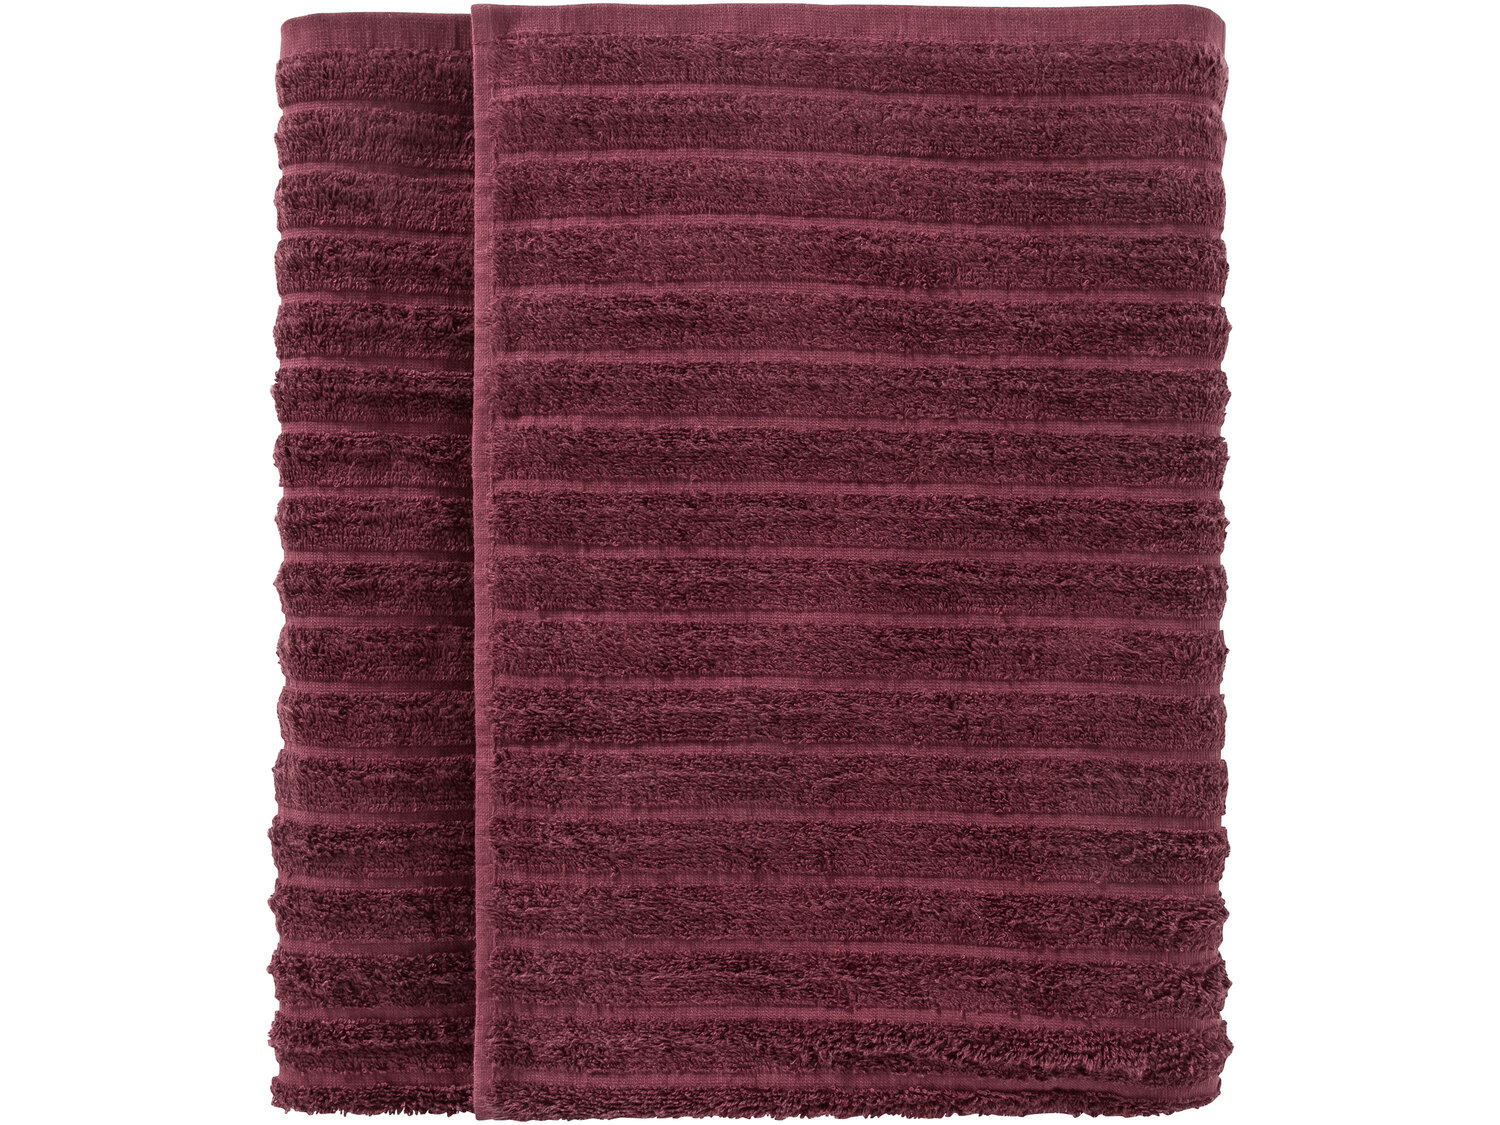 Ręcznik 100 x 150 cm Miomare, cena 34,99 PLN
- luksusowy ręcznik bawełniany
- ...